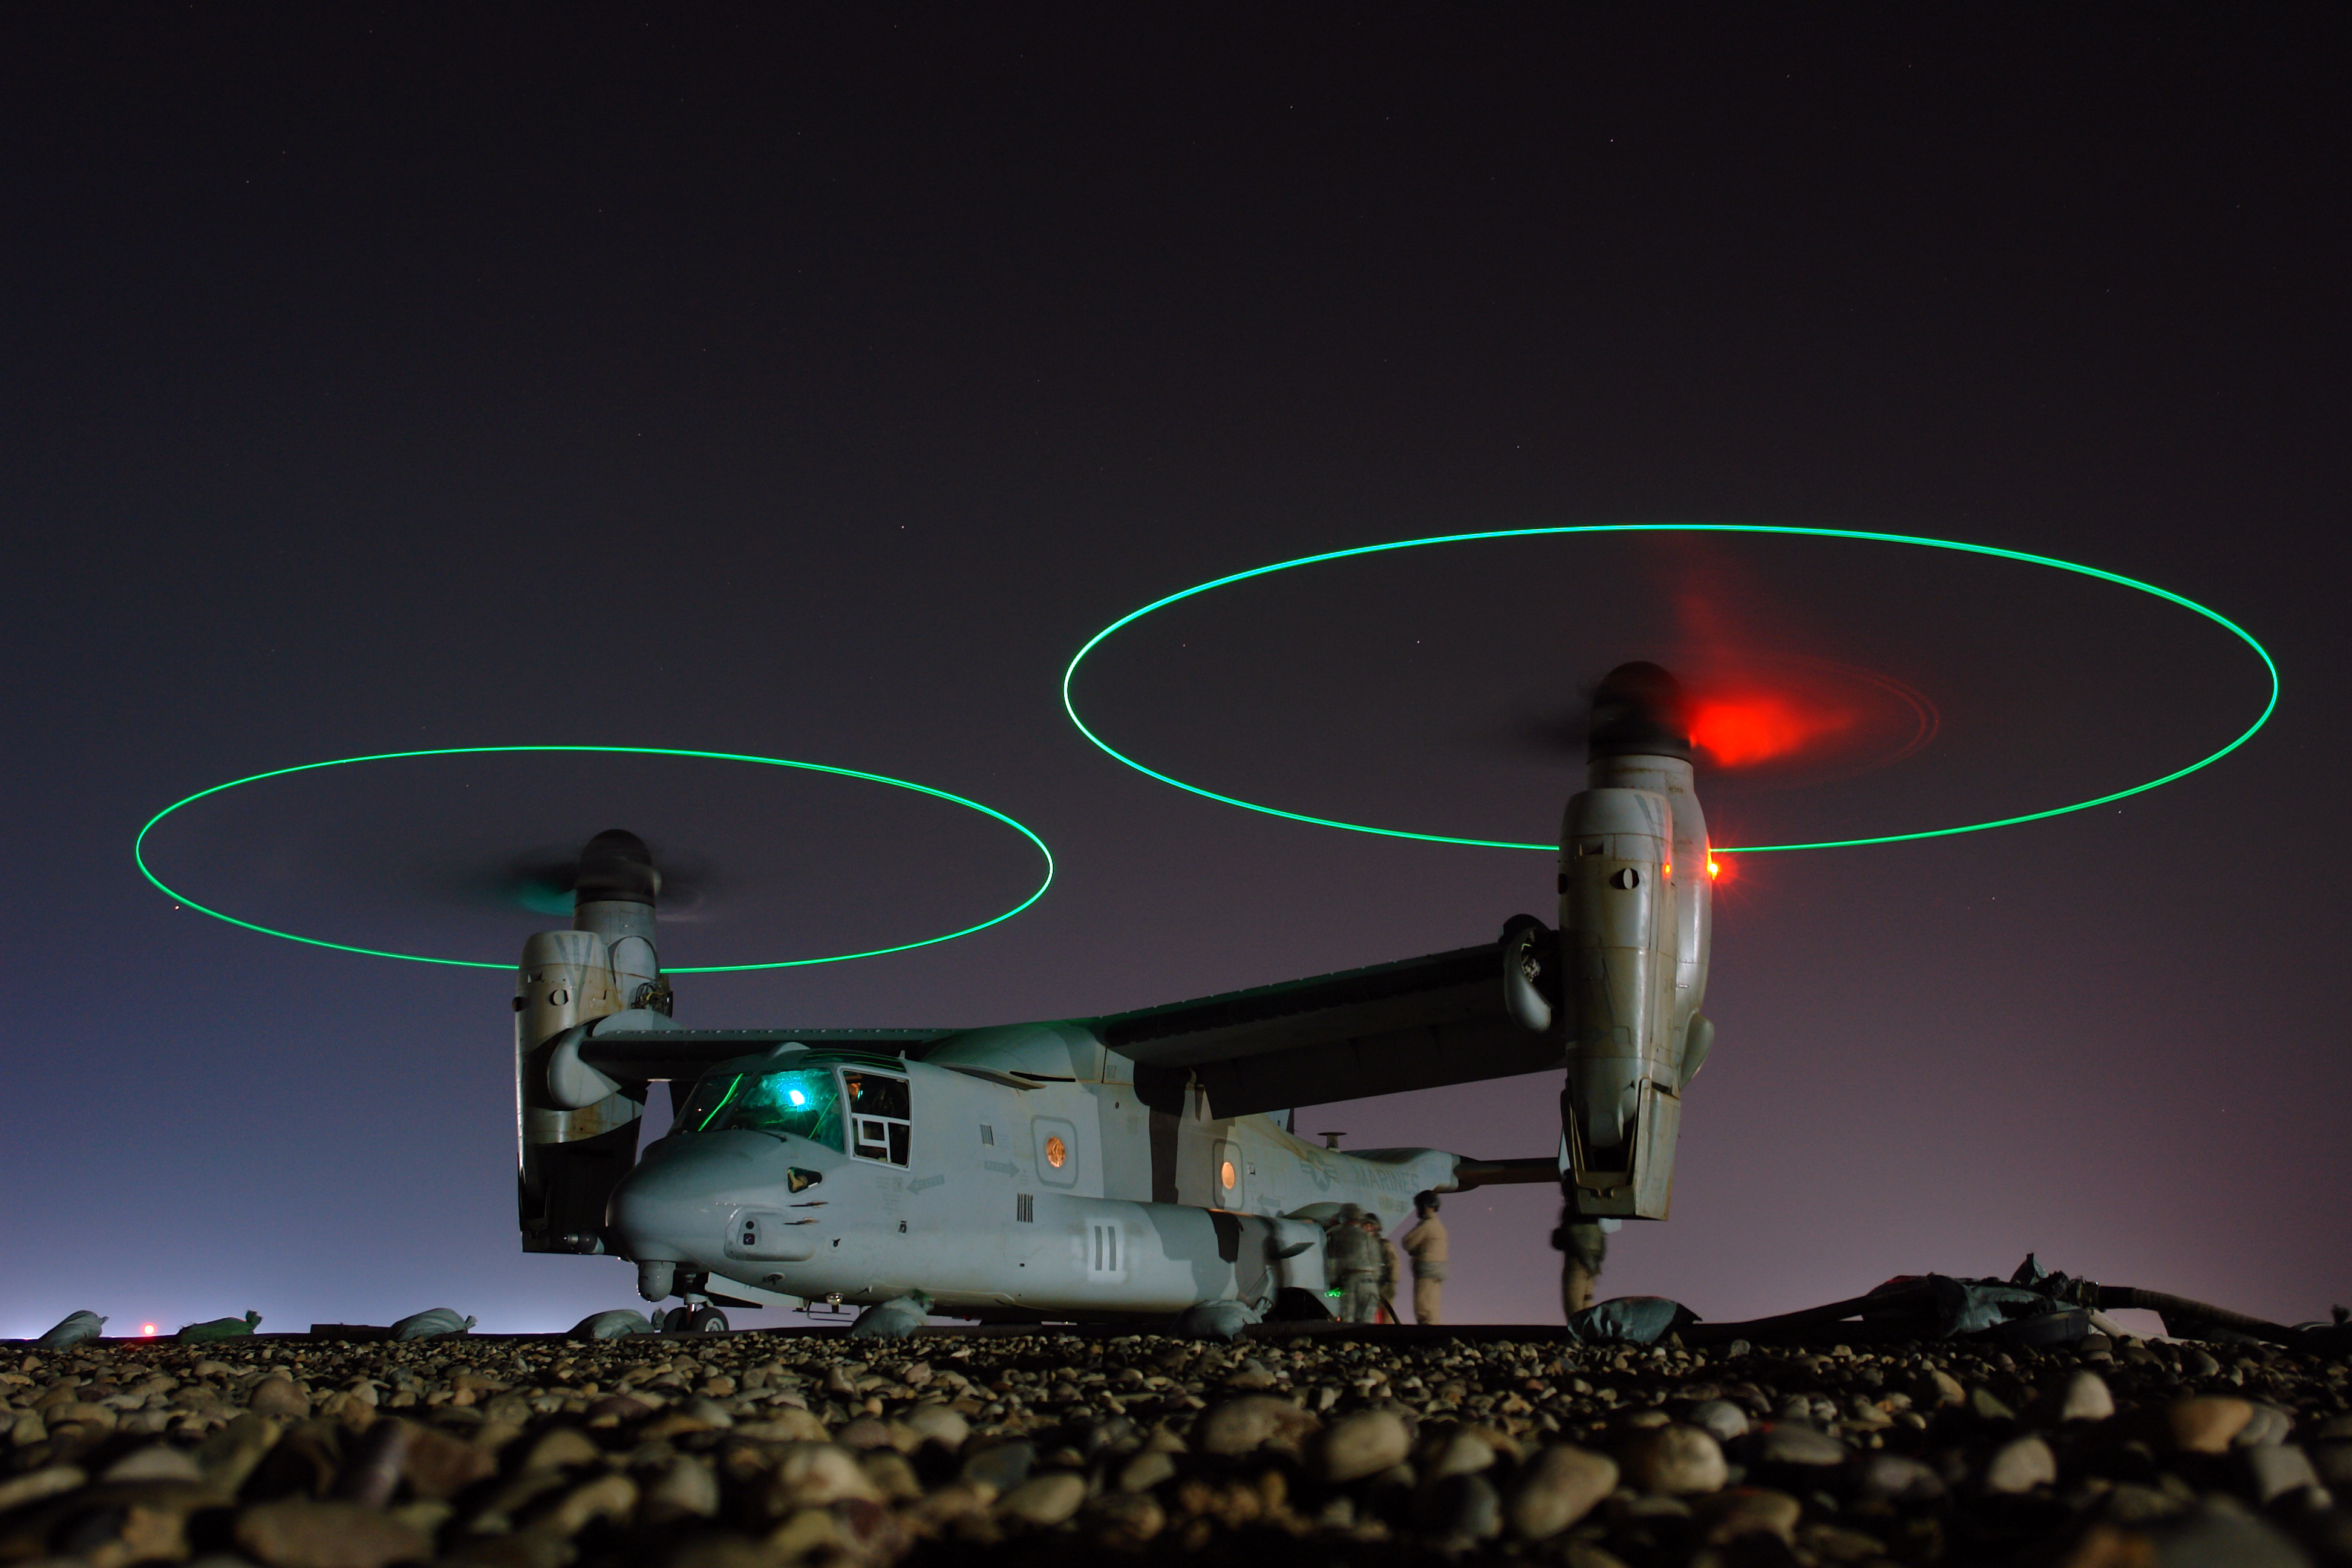 MV-22 Osprey in Iraq